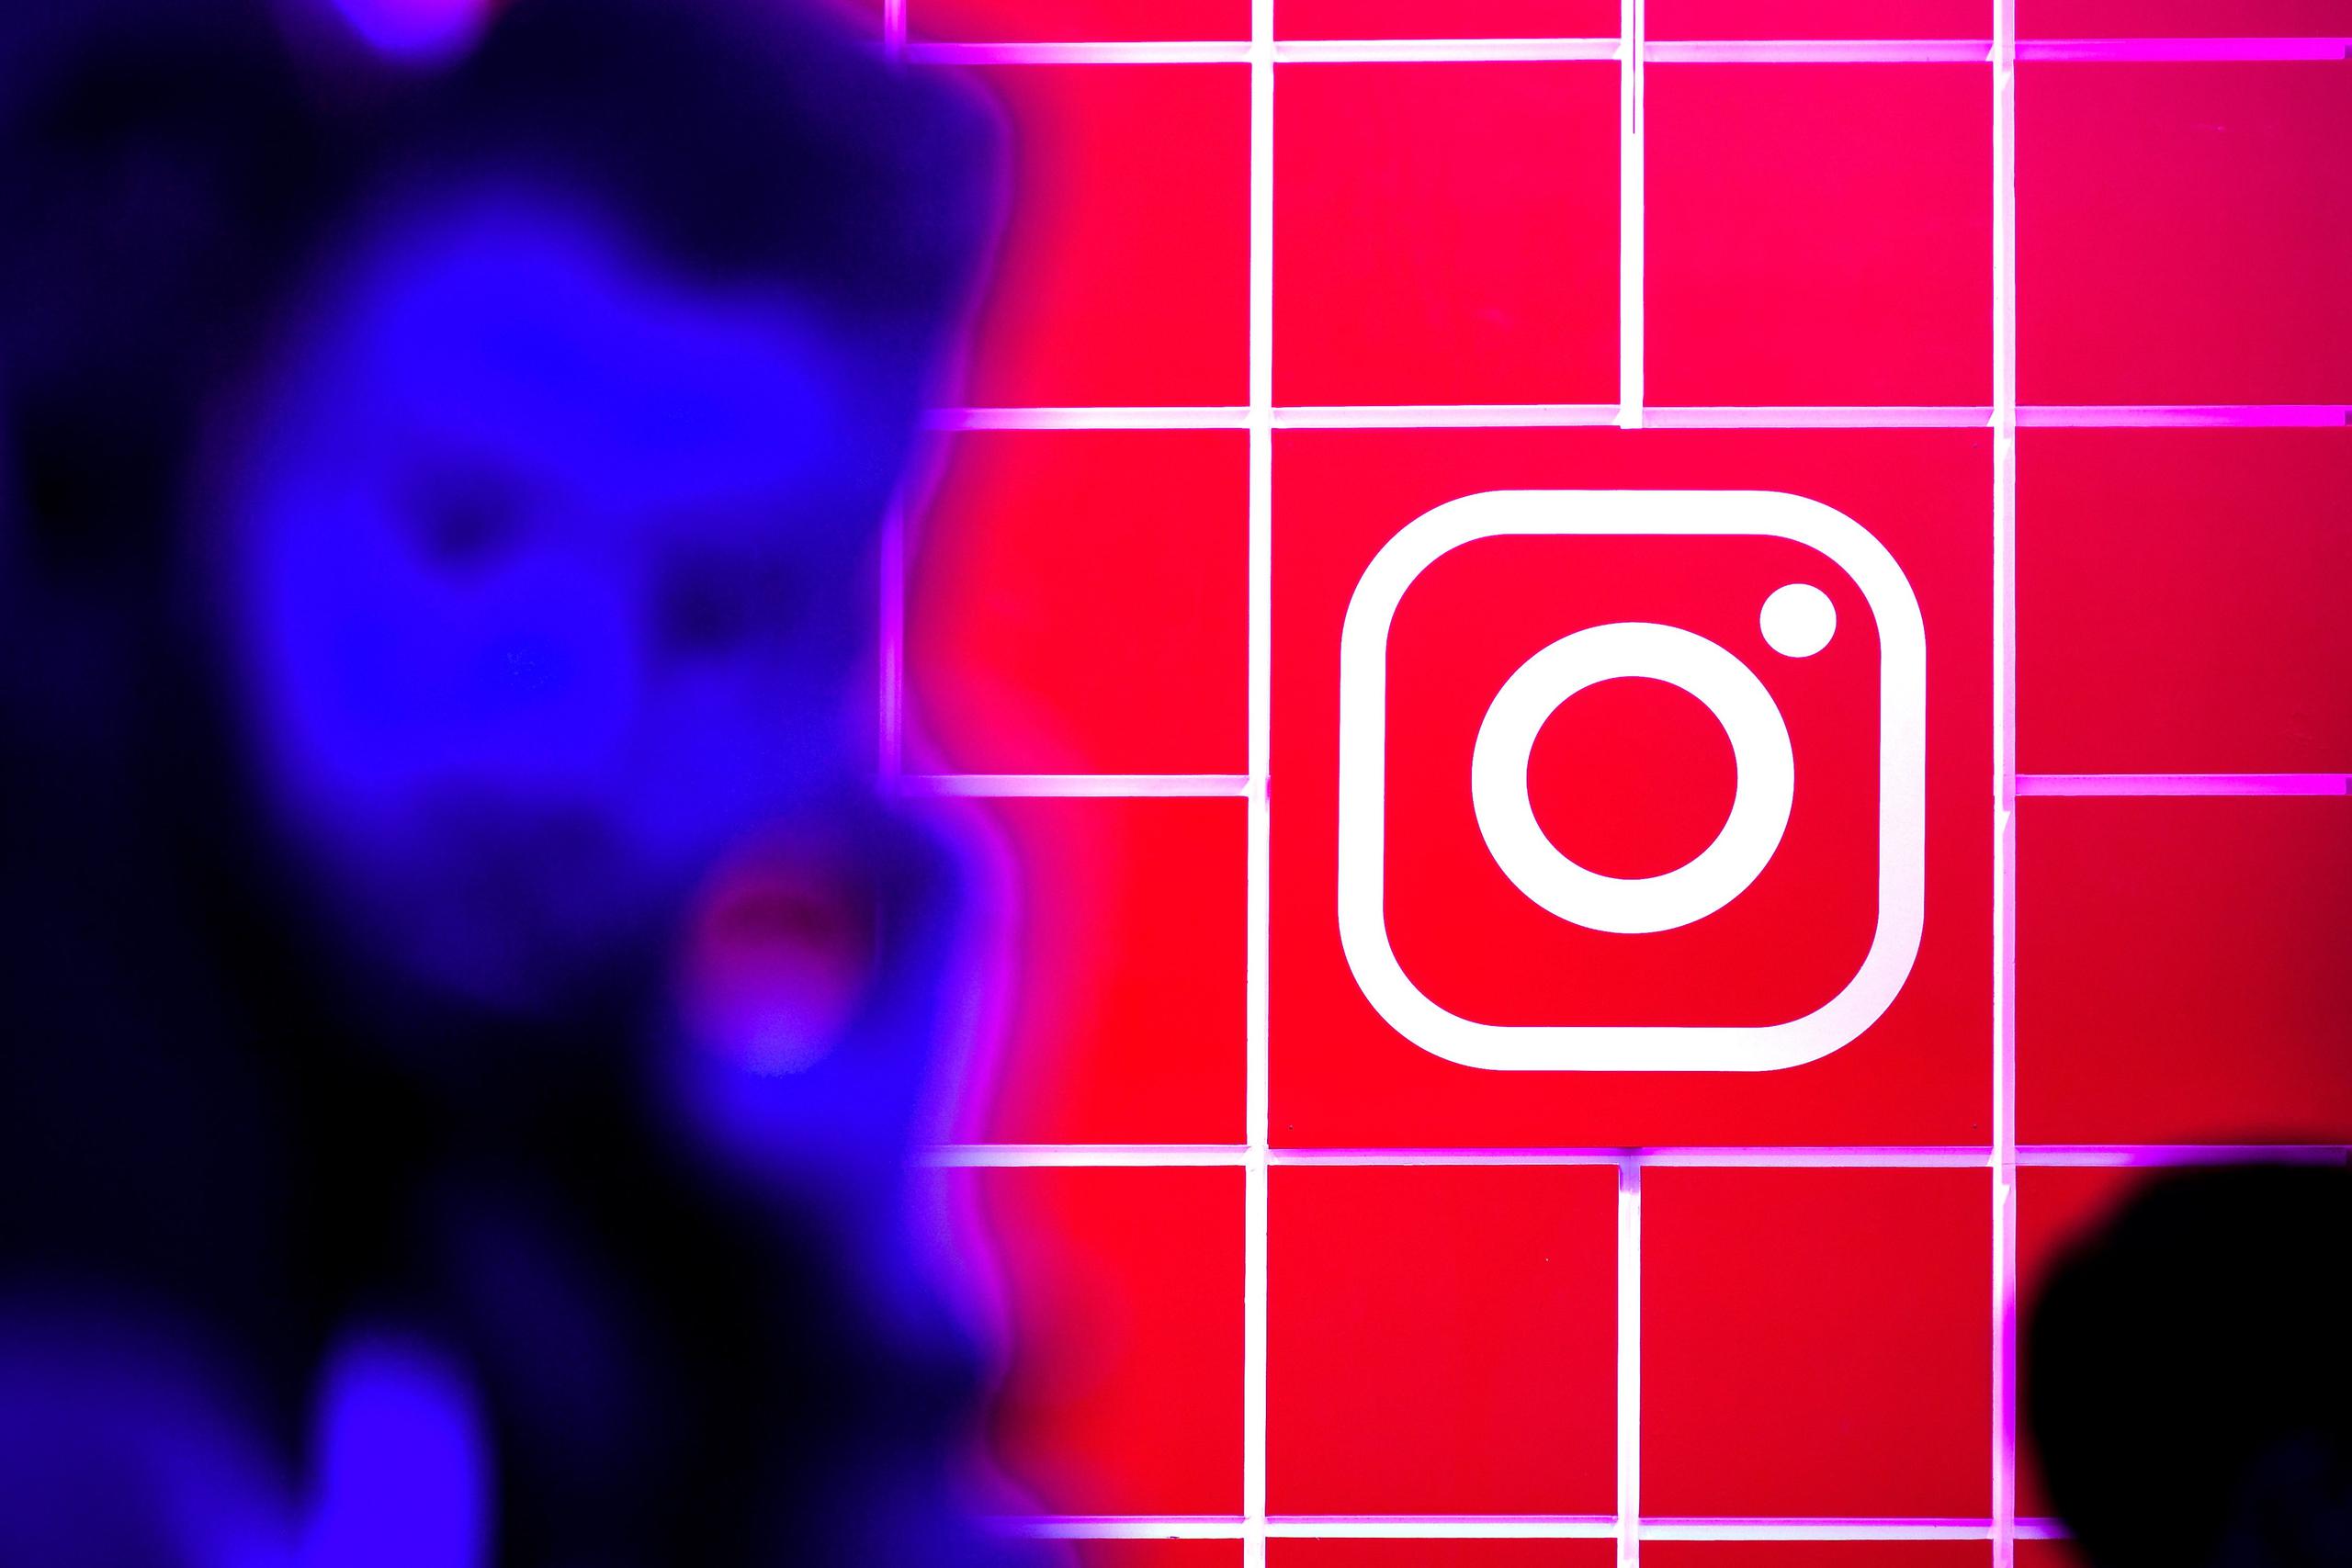 La red social Instagram cuenta con más de 1,500 millones de usuarios activos, que comparten imágenes y vídeos a través de la plataforma.